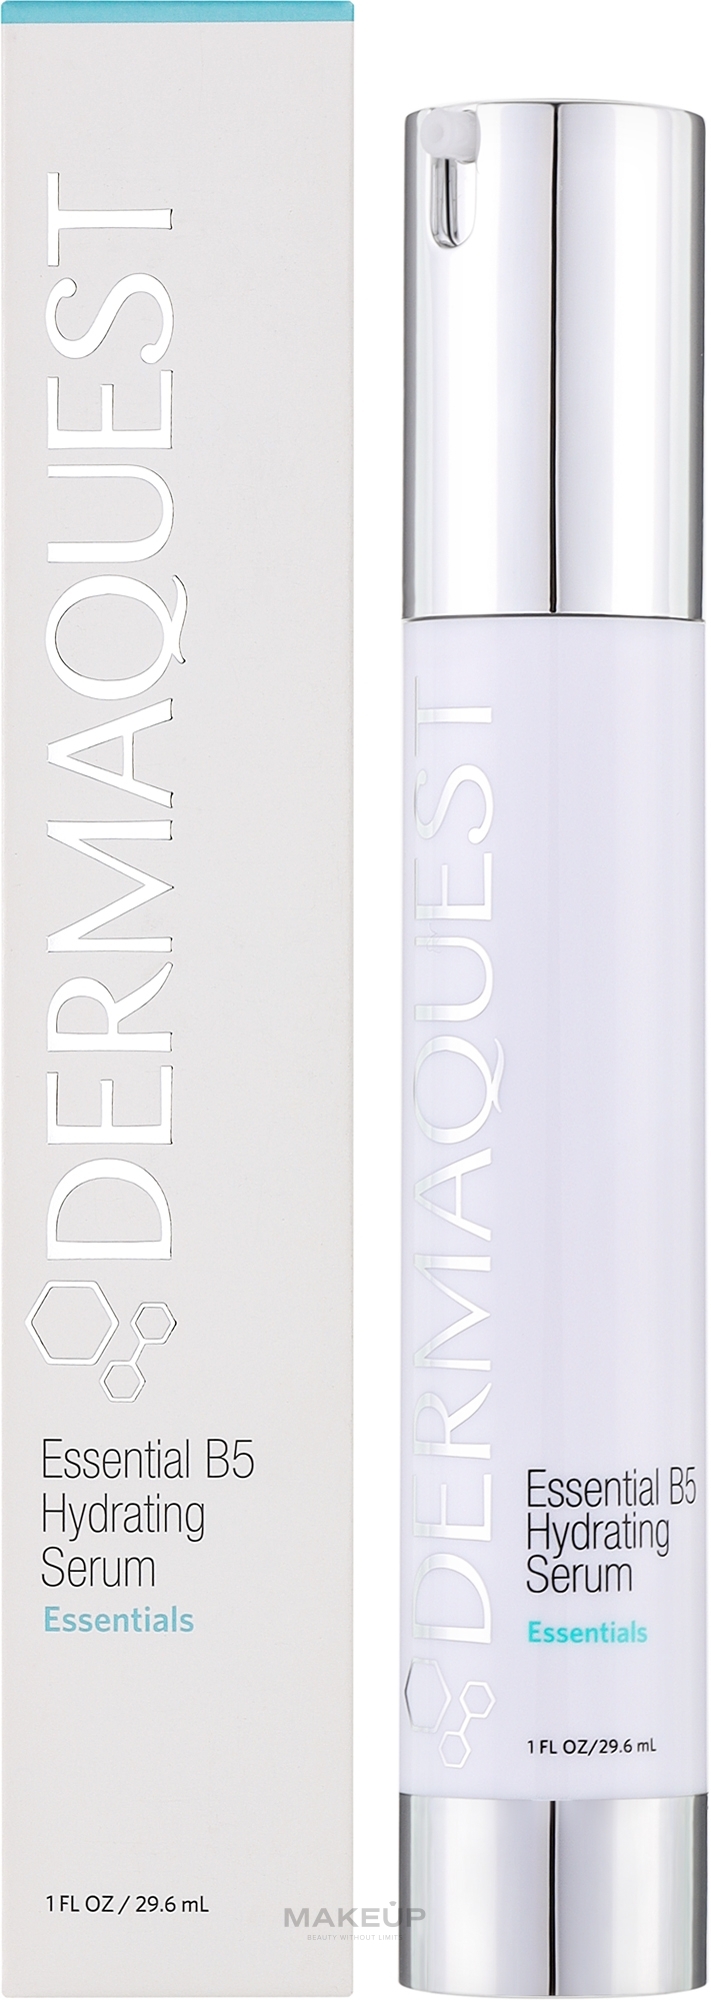 Nawilżające serum do twarzy - Dermaquest+ Advanced Formulas Essential B5 Hydrating Serum  — Zdjęcie 29.6 ml